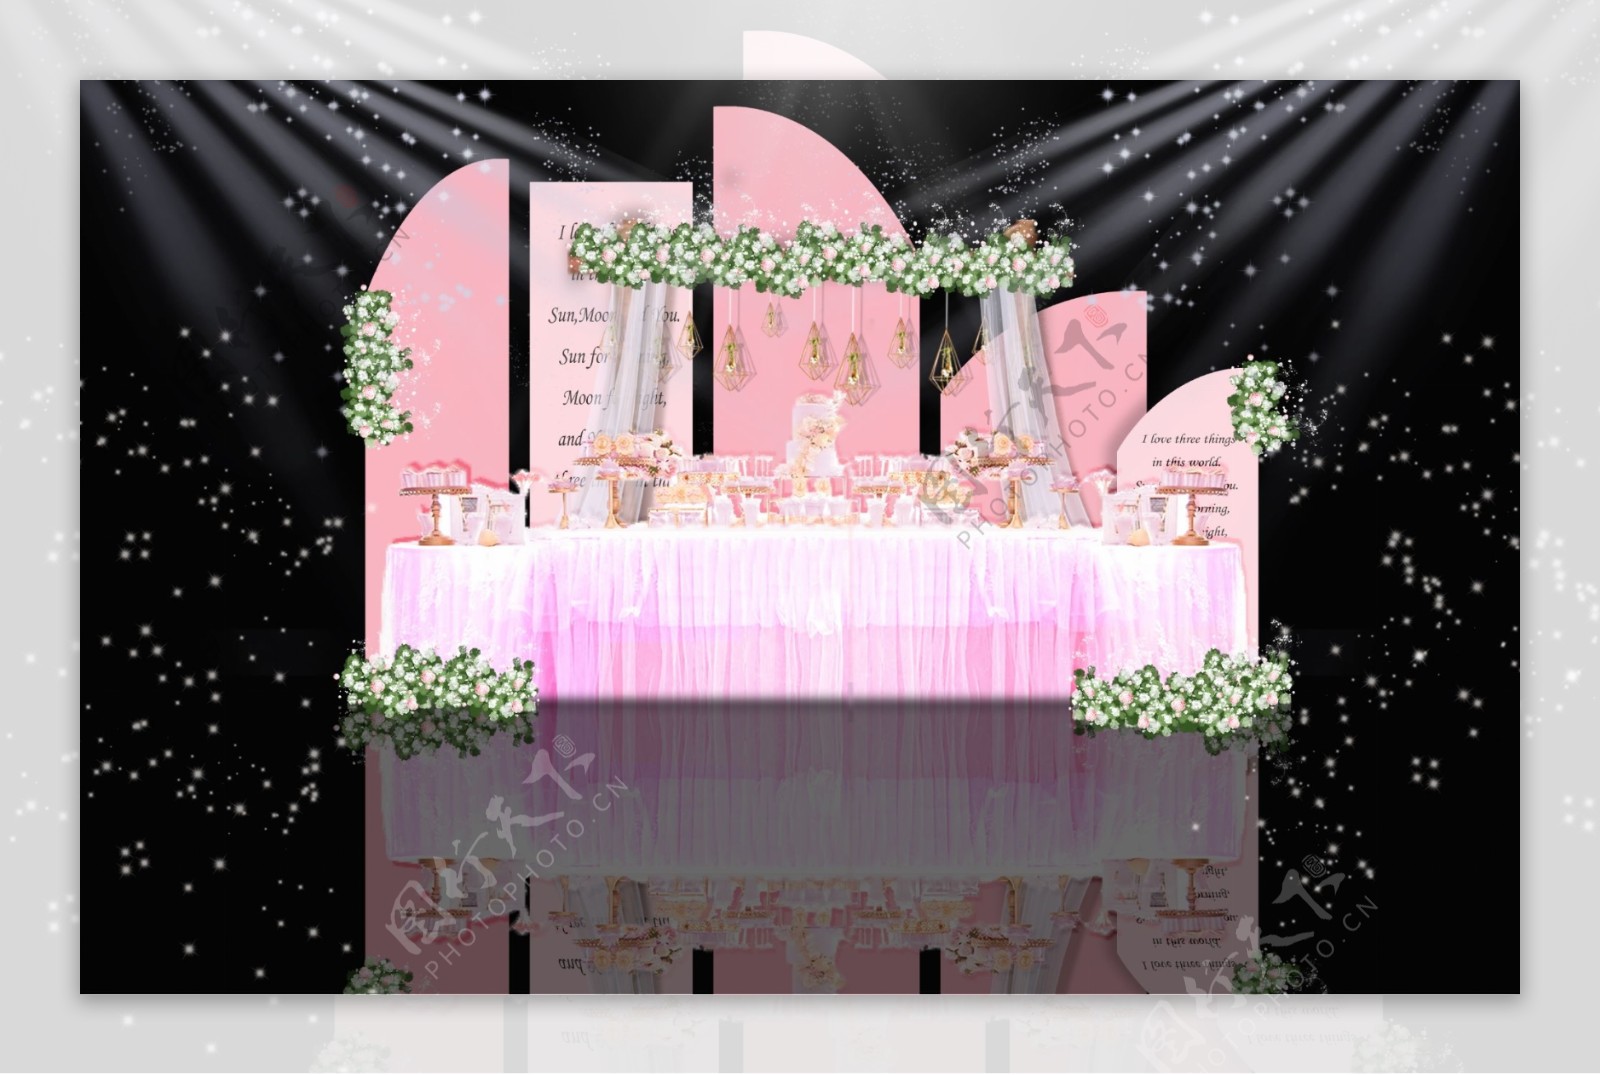 白粉色系婚礼迎宾区甜品区效果图